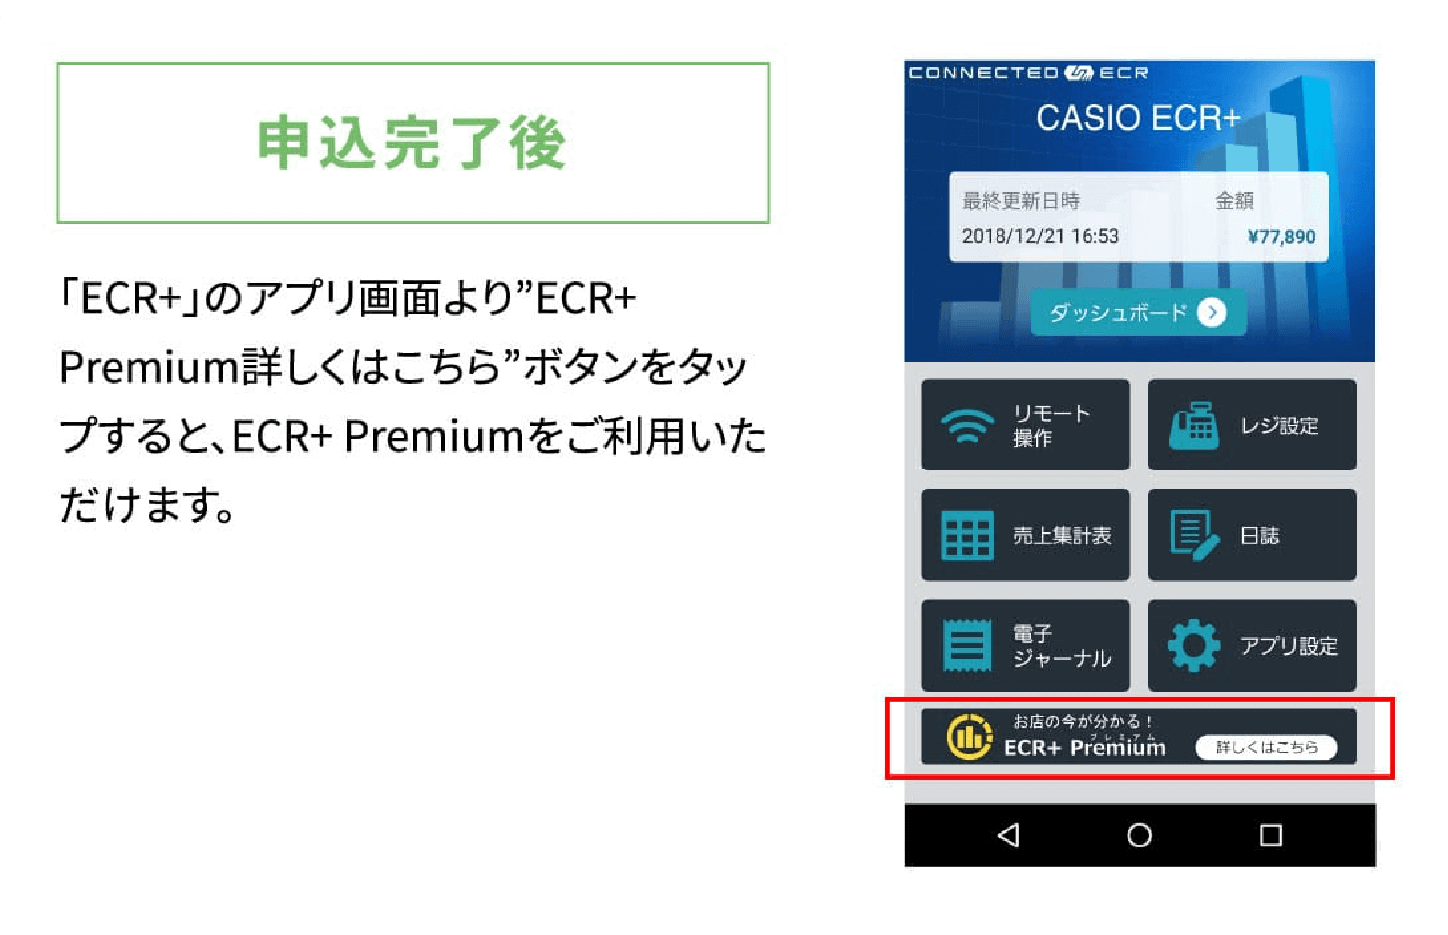 申込完了後「ECR+」のアプリ画面より” ECR+Premiun詳しくはこちら”ボタンをタップすると、 ECR+Premiunをご利用いただけます。